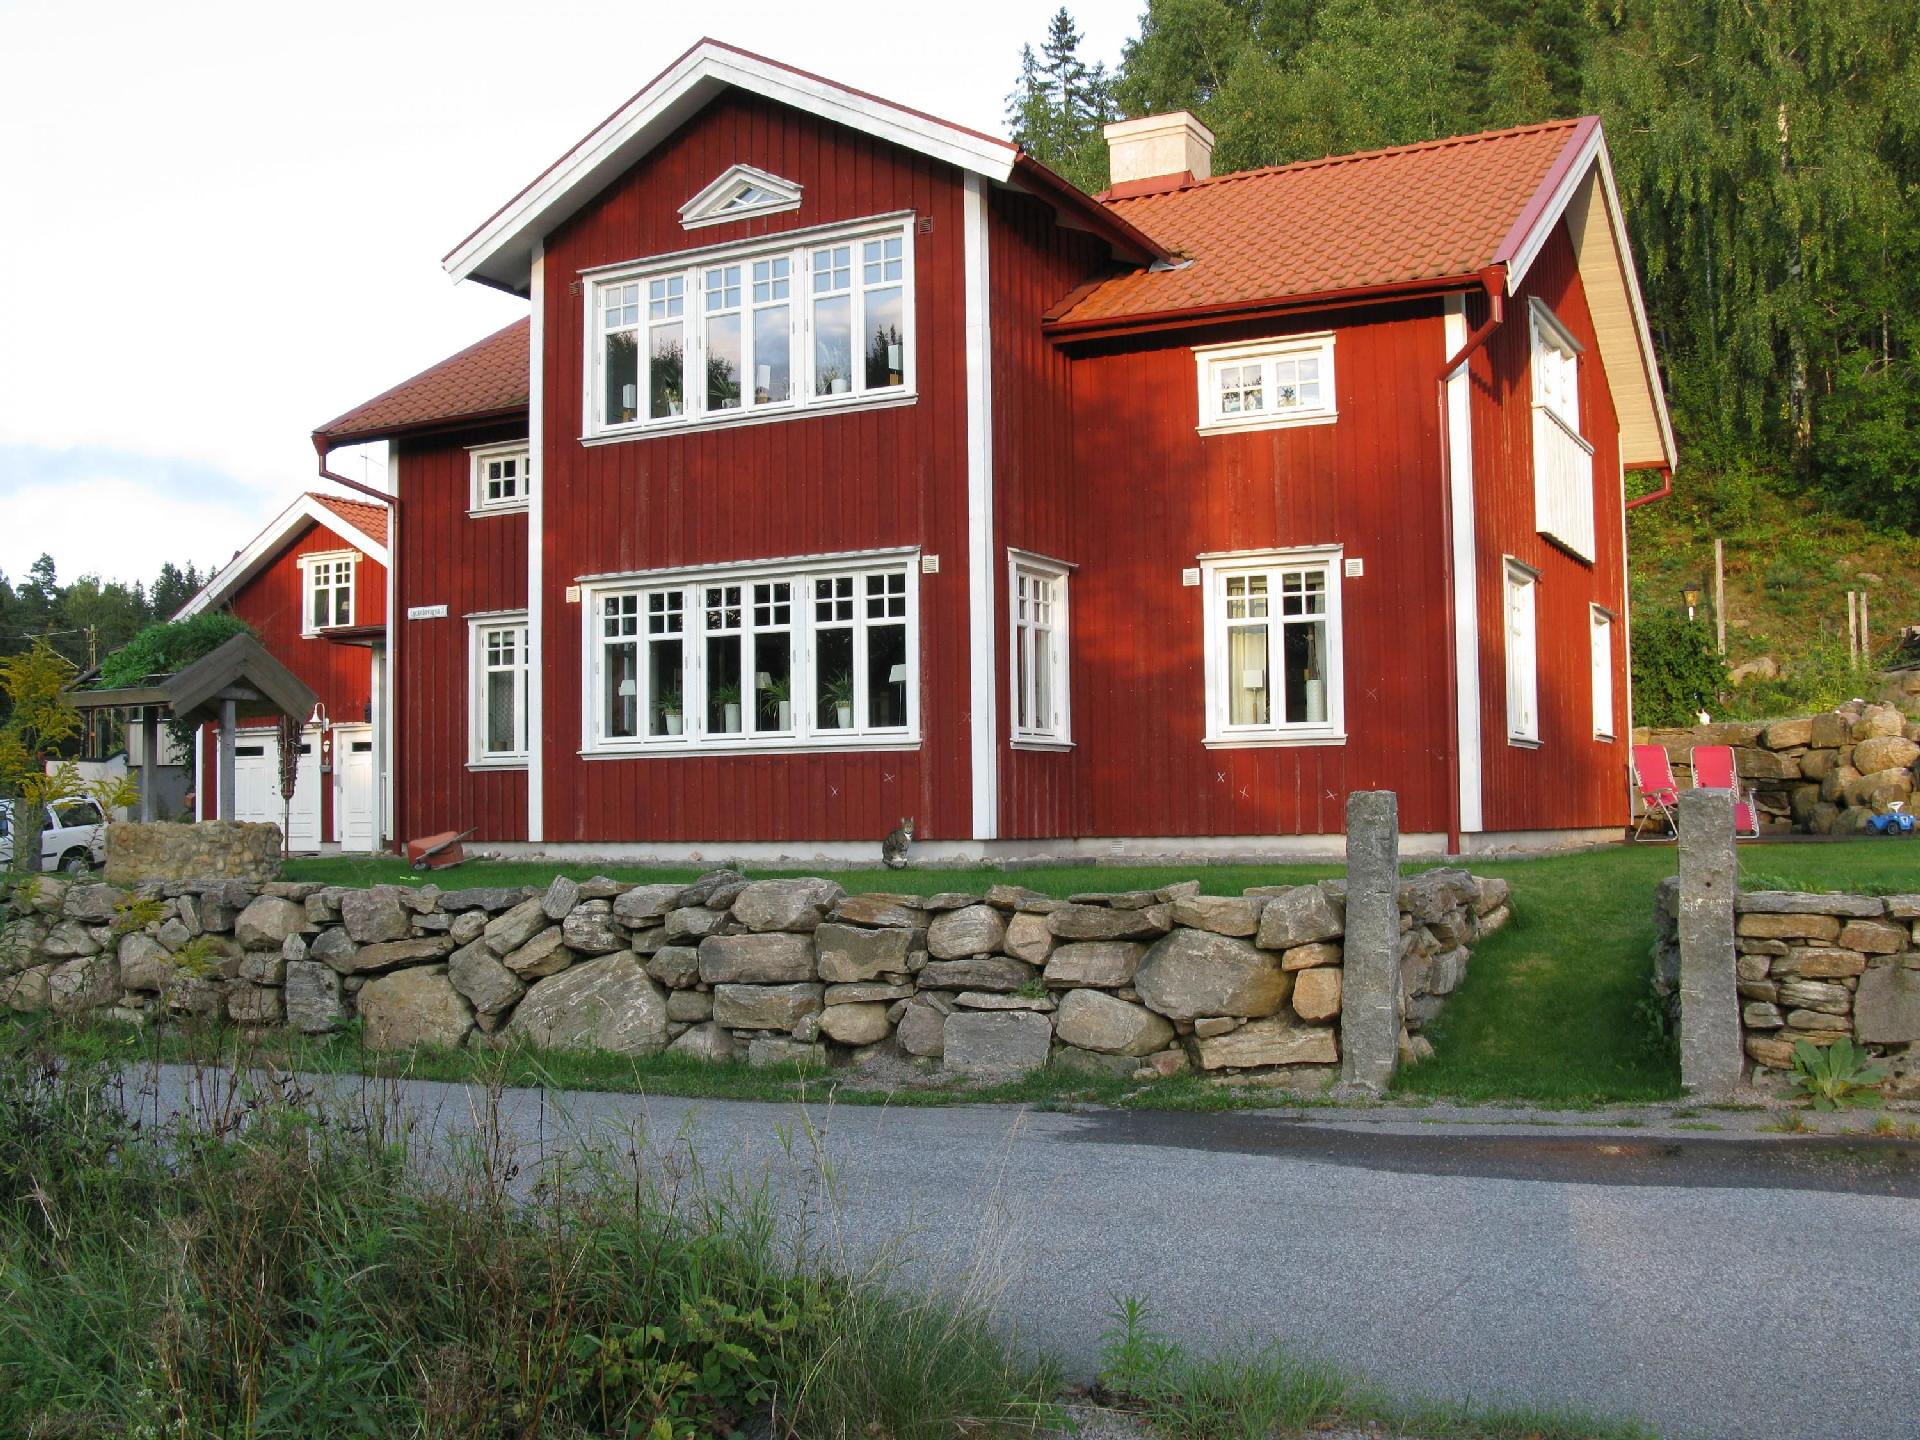 Ferienhaus in Lindebergshult-Räveskalla mit G Ferienhaus in Europa